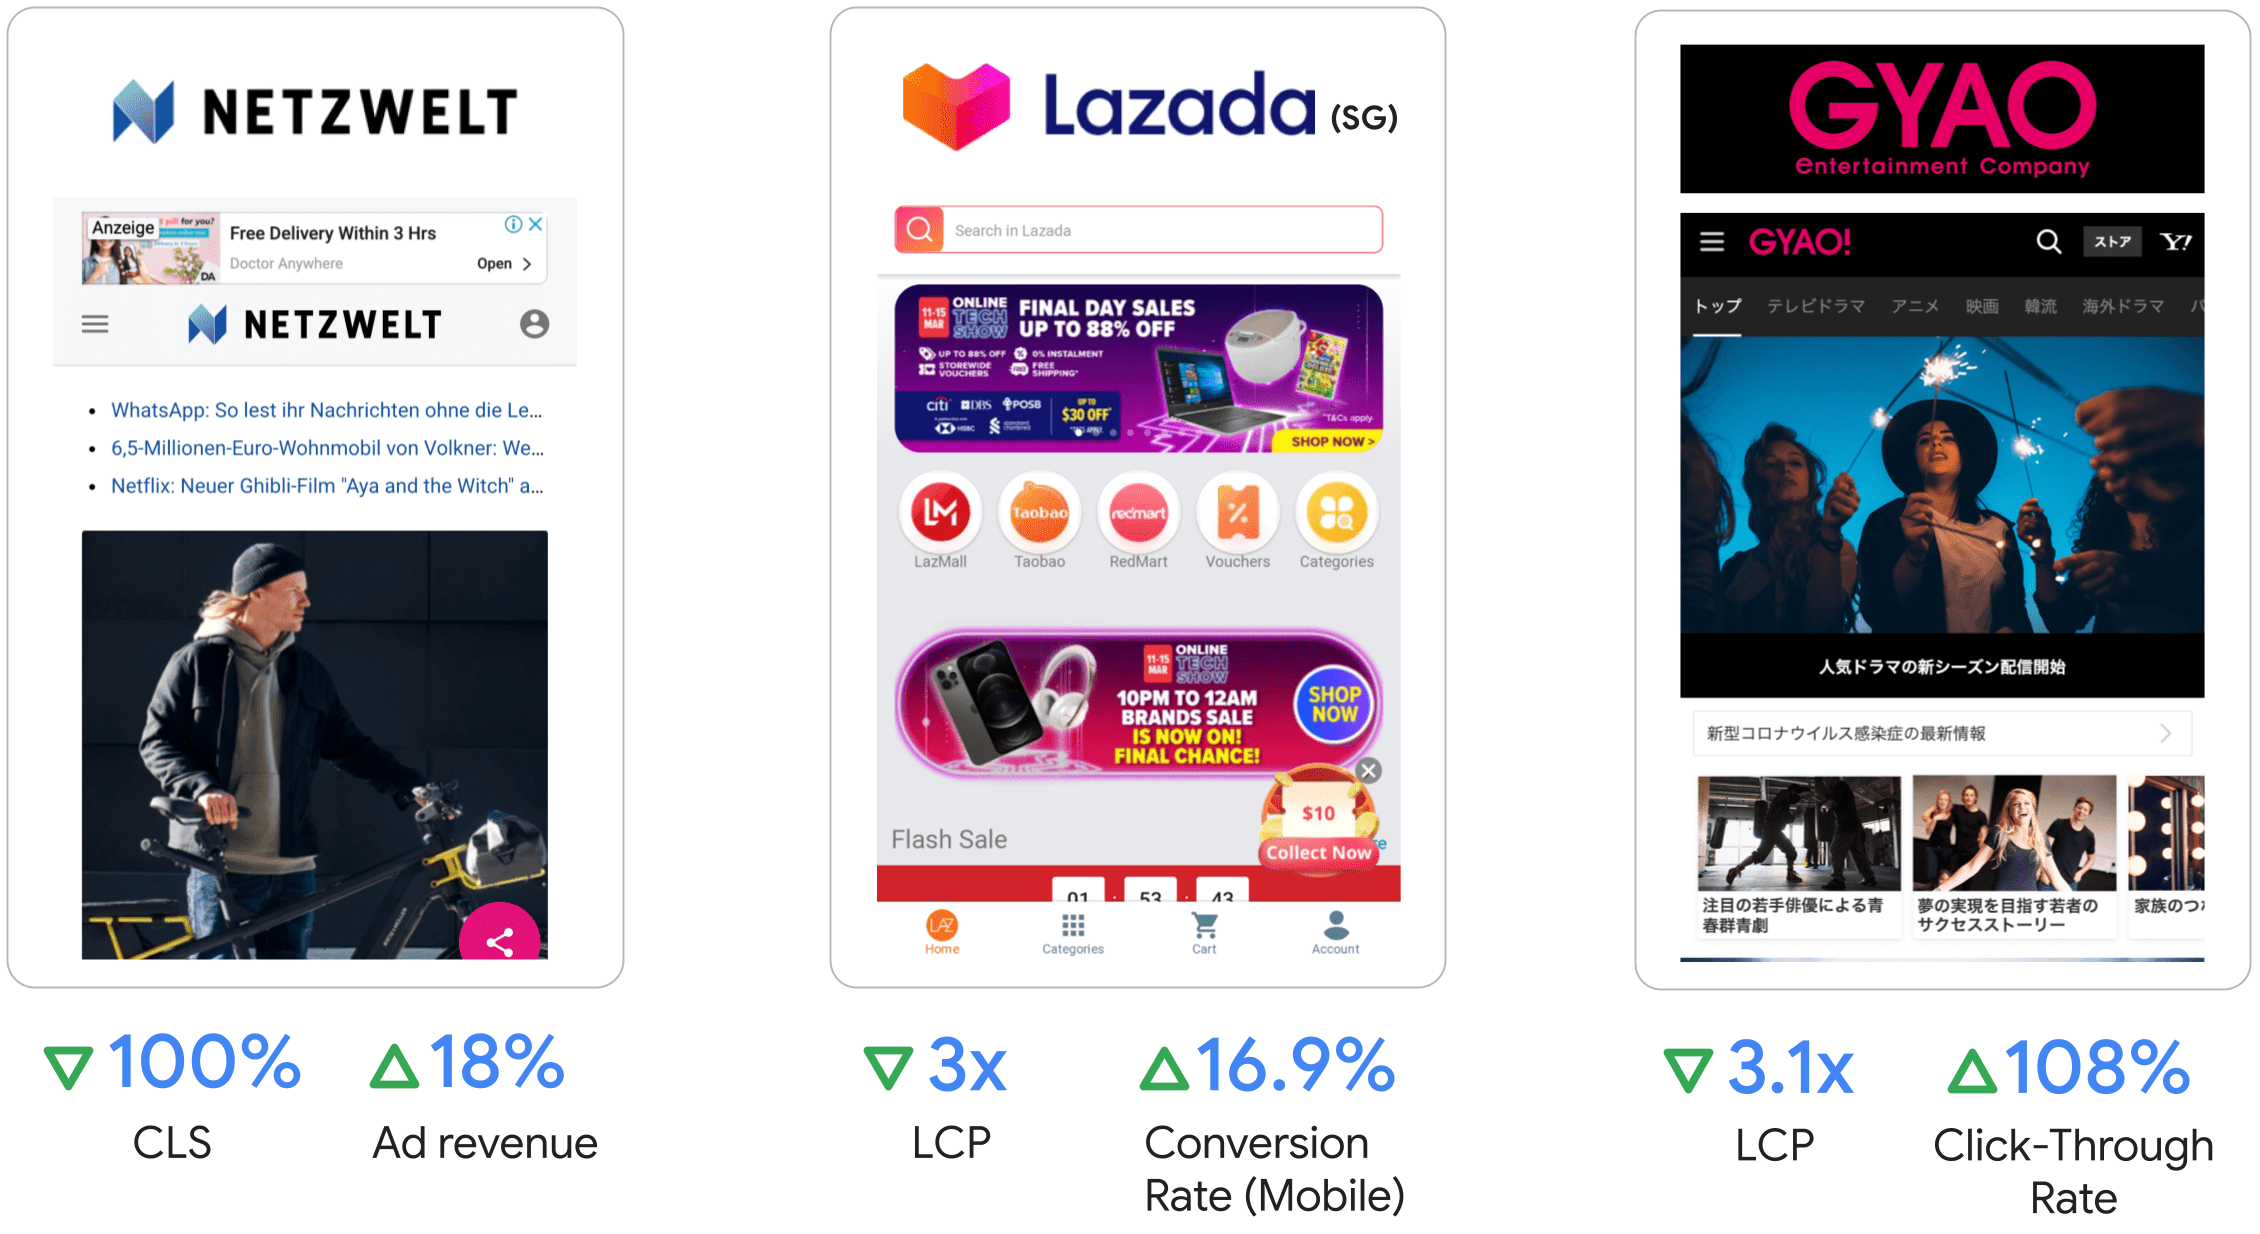 Netzwelt では広告収入が 18%、Lazada ではモバイルでの LCP が 3 倍、コンバージョン率が 16.9%、GYAO では LCP が 3.1 倍、クリック率が 108% 向上しました